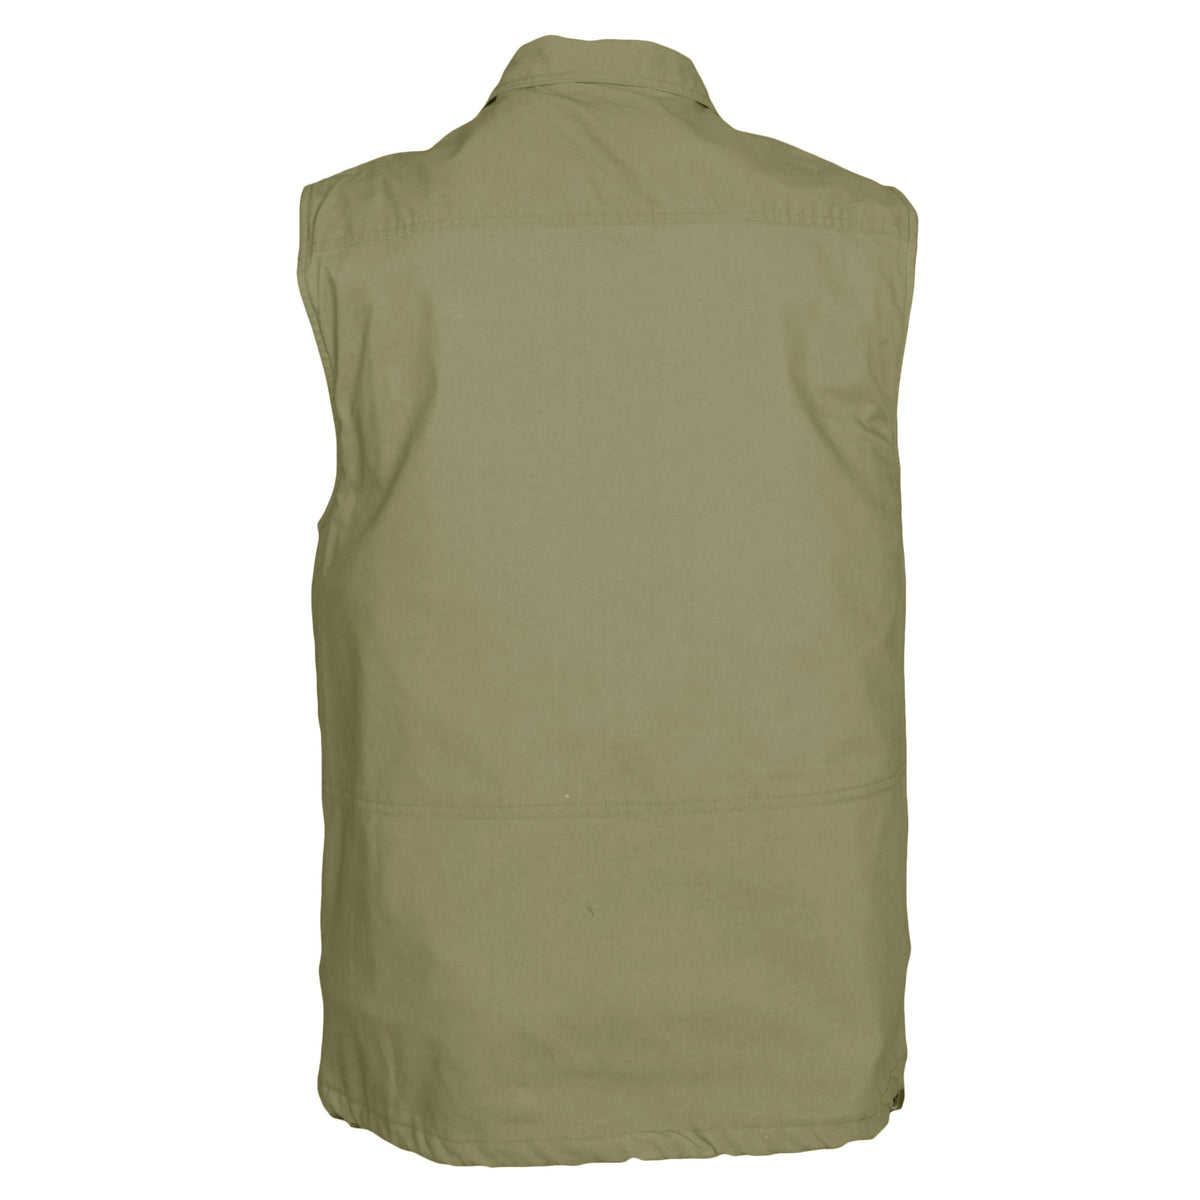 Tag Safari Travel Vest for Men, 100% Cotton, Utility, Multi Pocket, Perfect for Hunting Games (Khaki, X-Large)